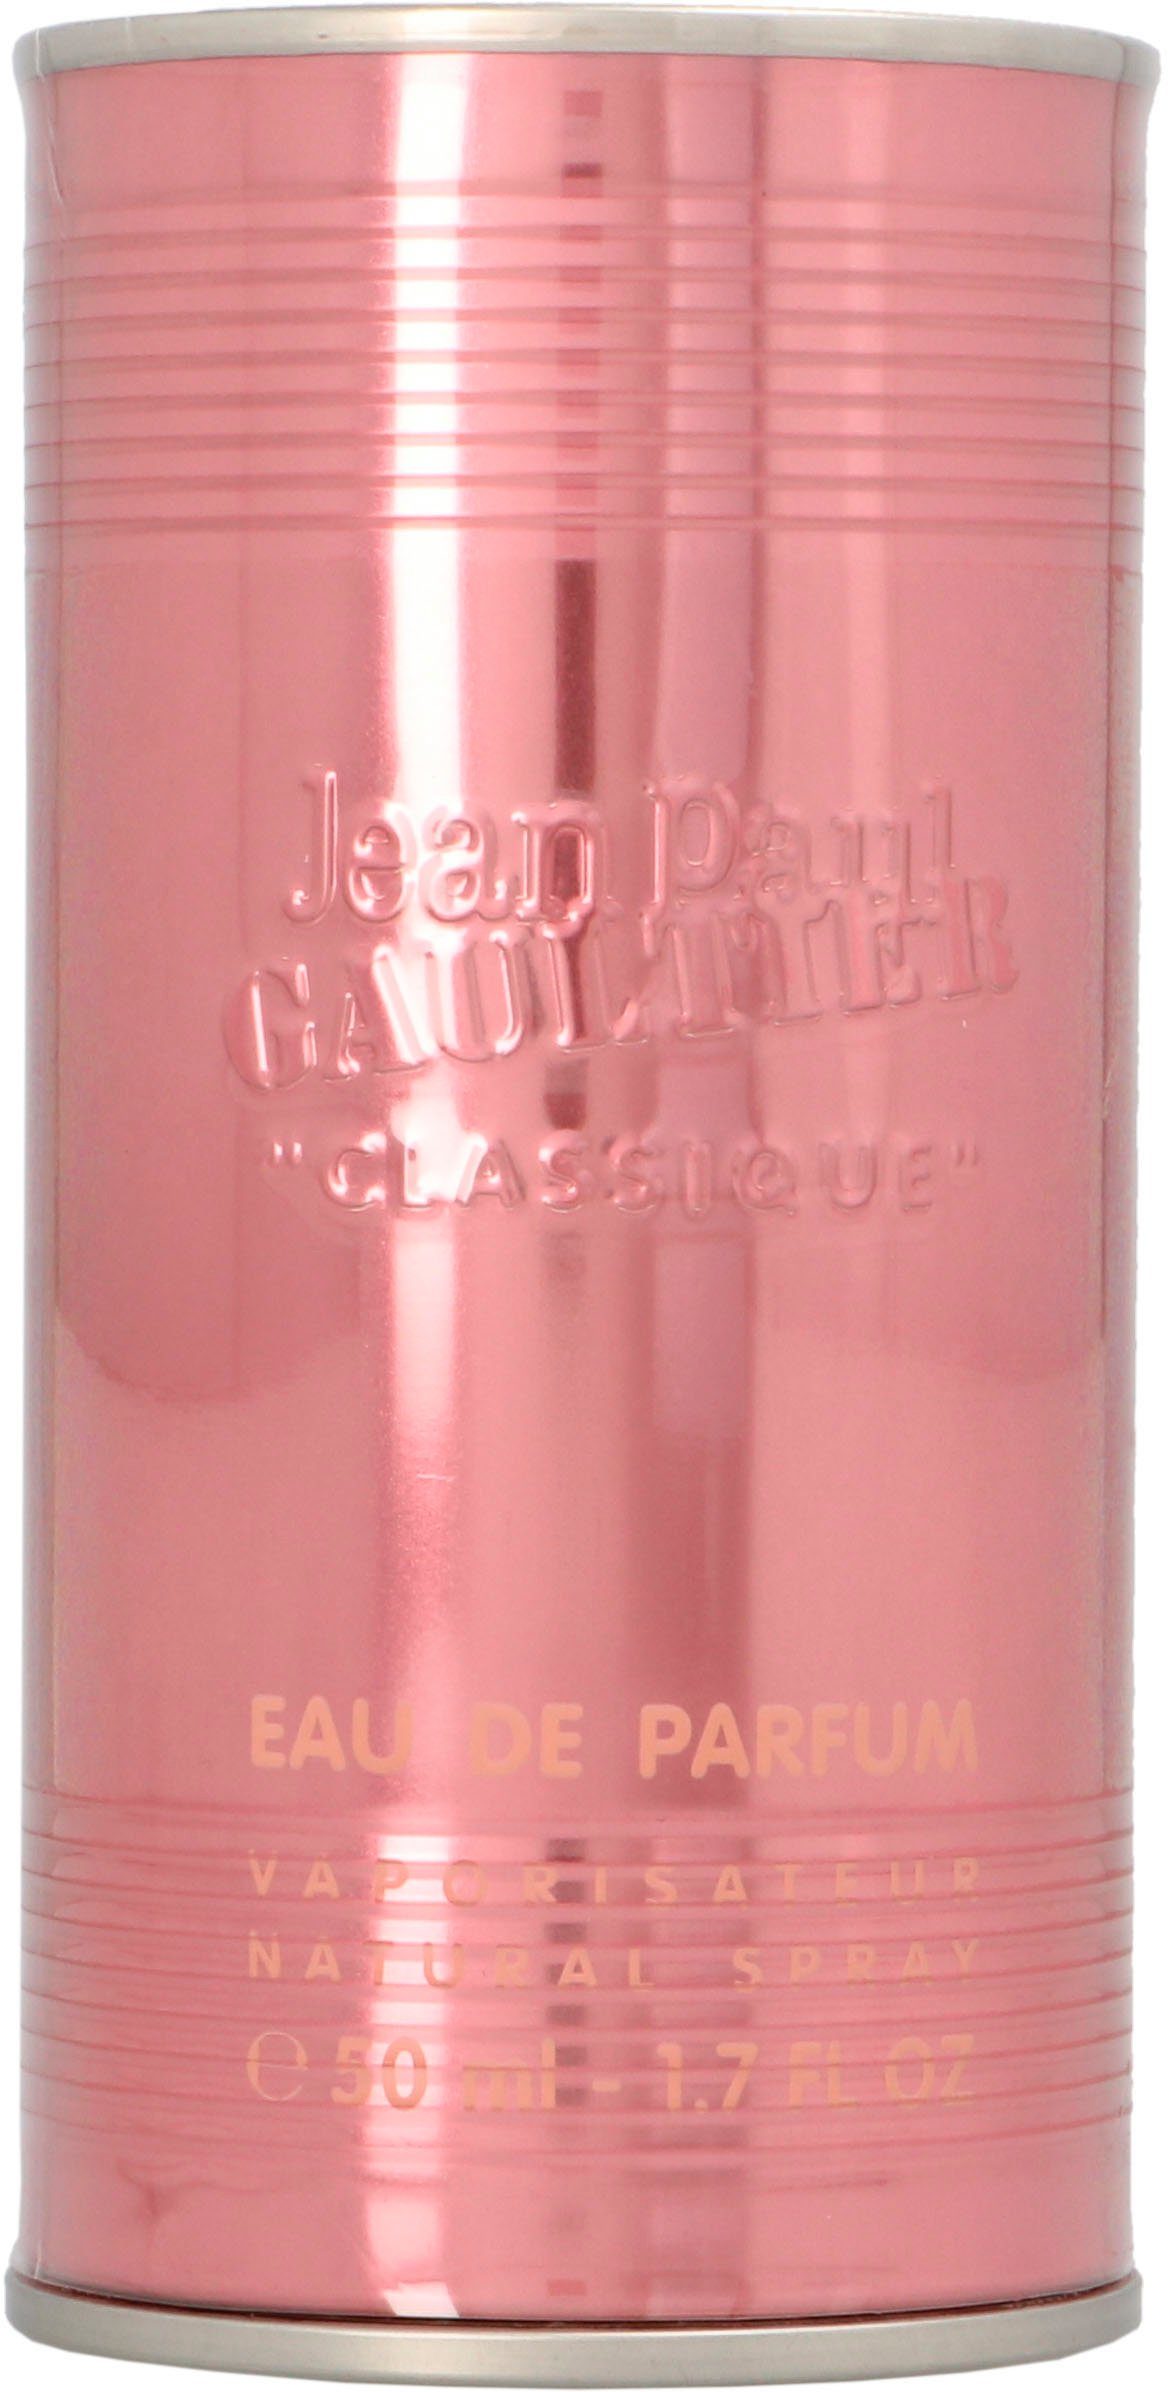 GAULTIER de JEAN Classique Eau PAUL Parfum